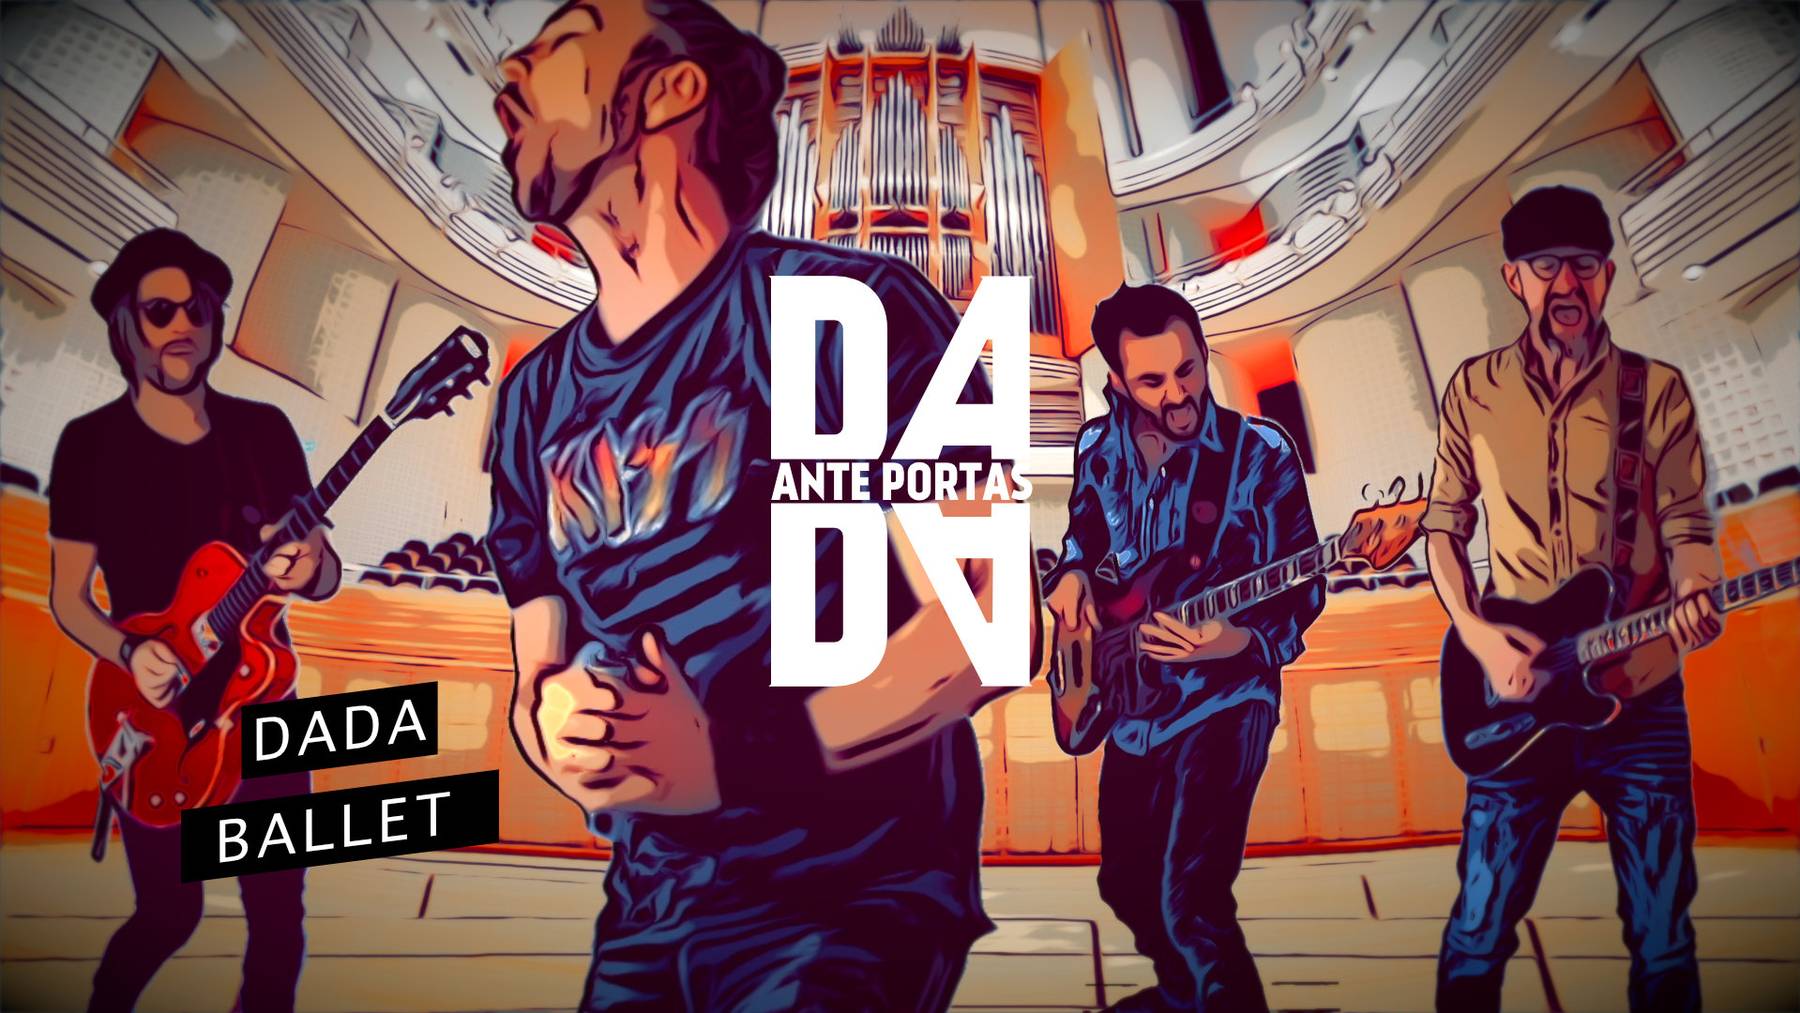 Die Luzerner Band Dada Ante Portas mit ihrem spektakulären Musikvideo zur neuen Single «Dada Ballet».